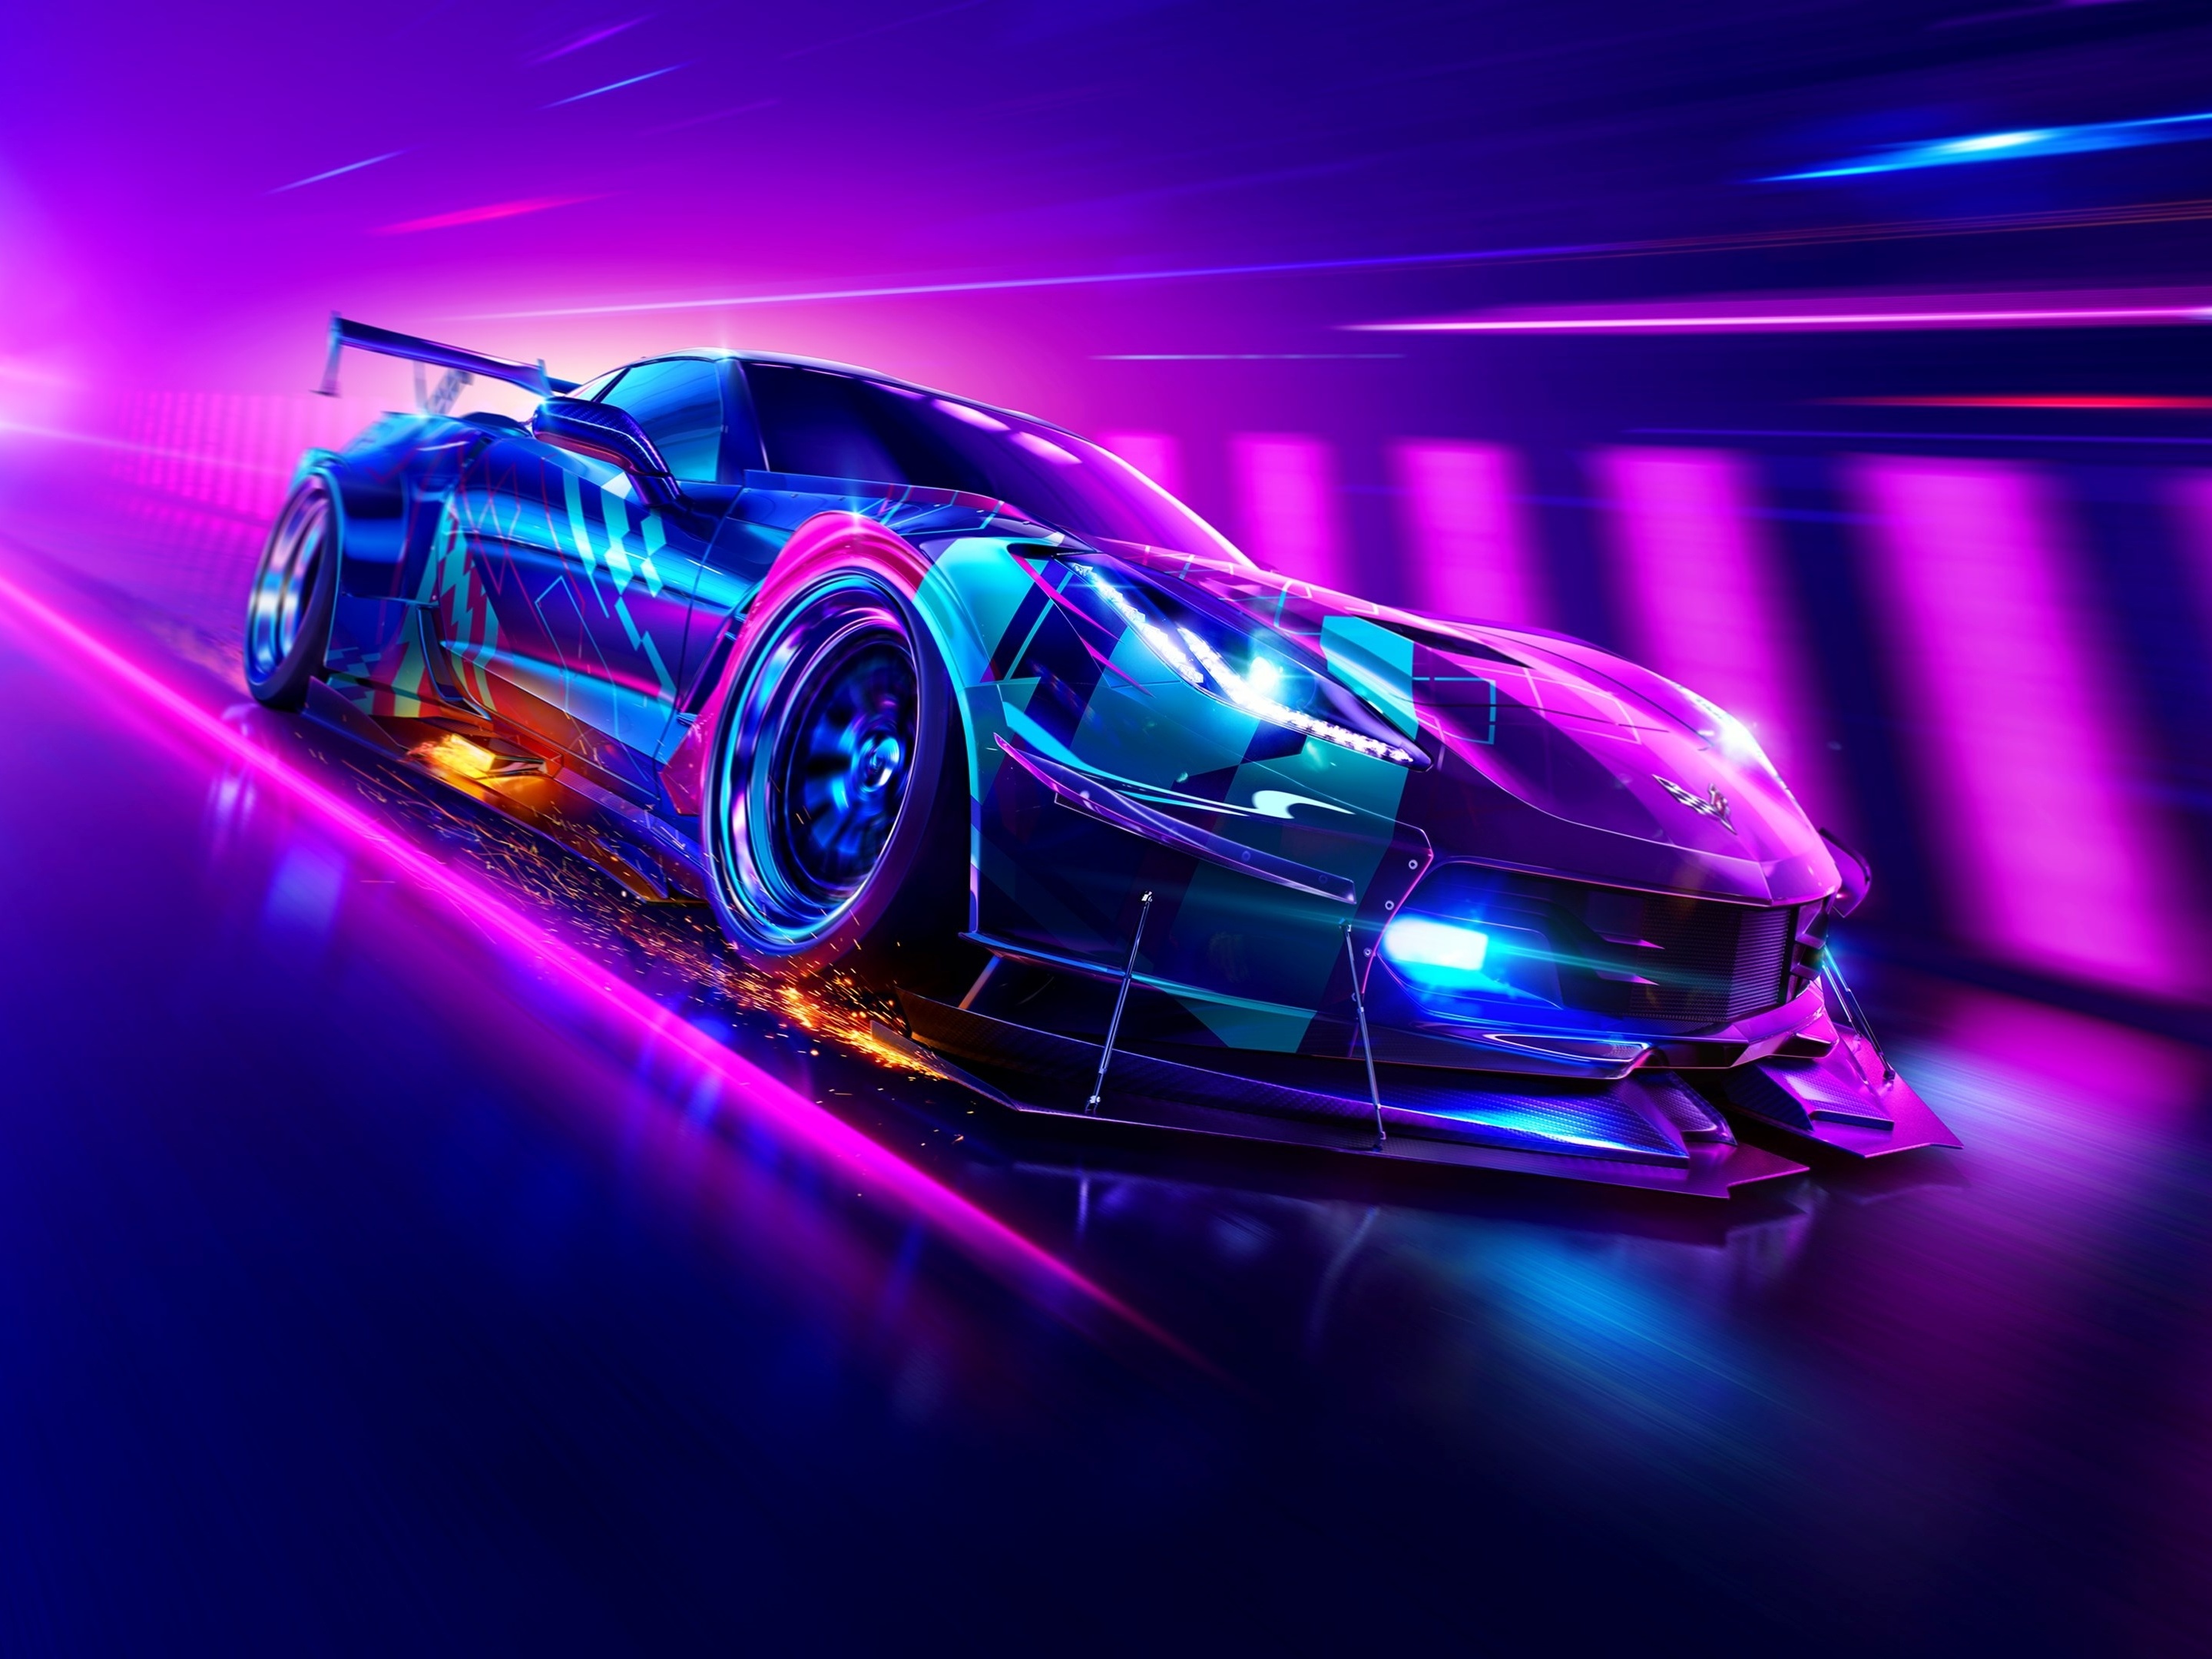 Need for Speed Heat: dicas para mandar bem no novo jogo de corrida